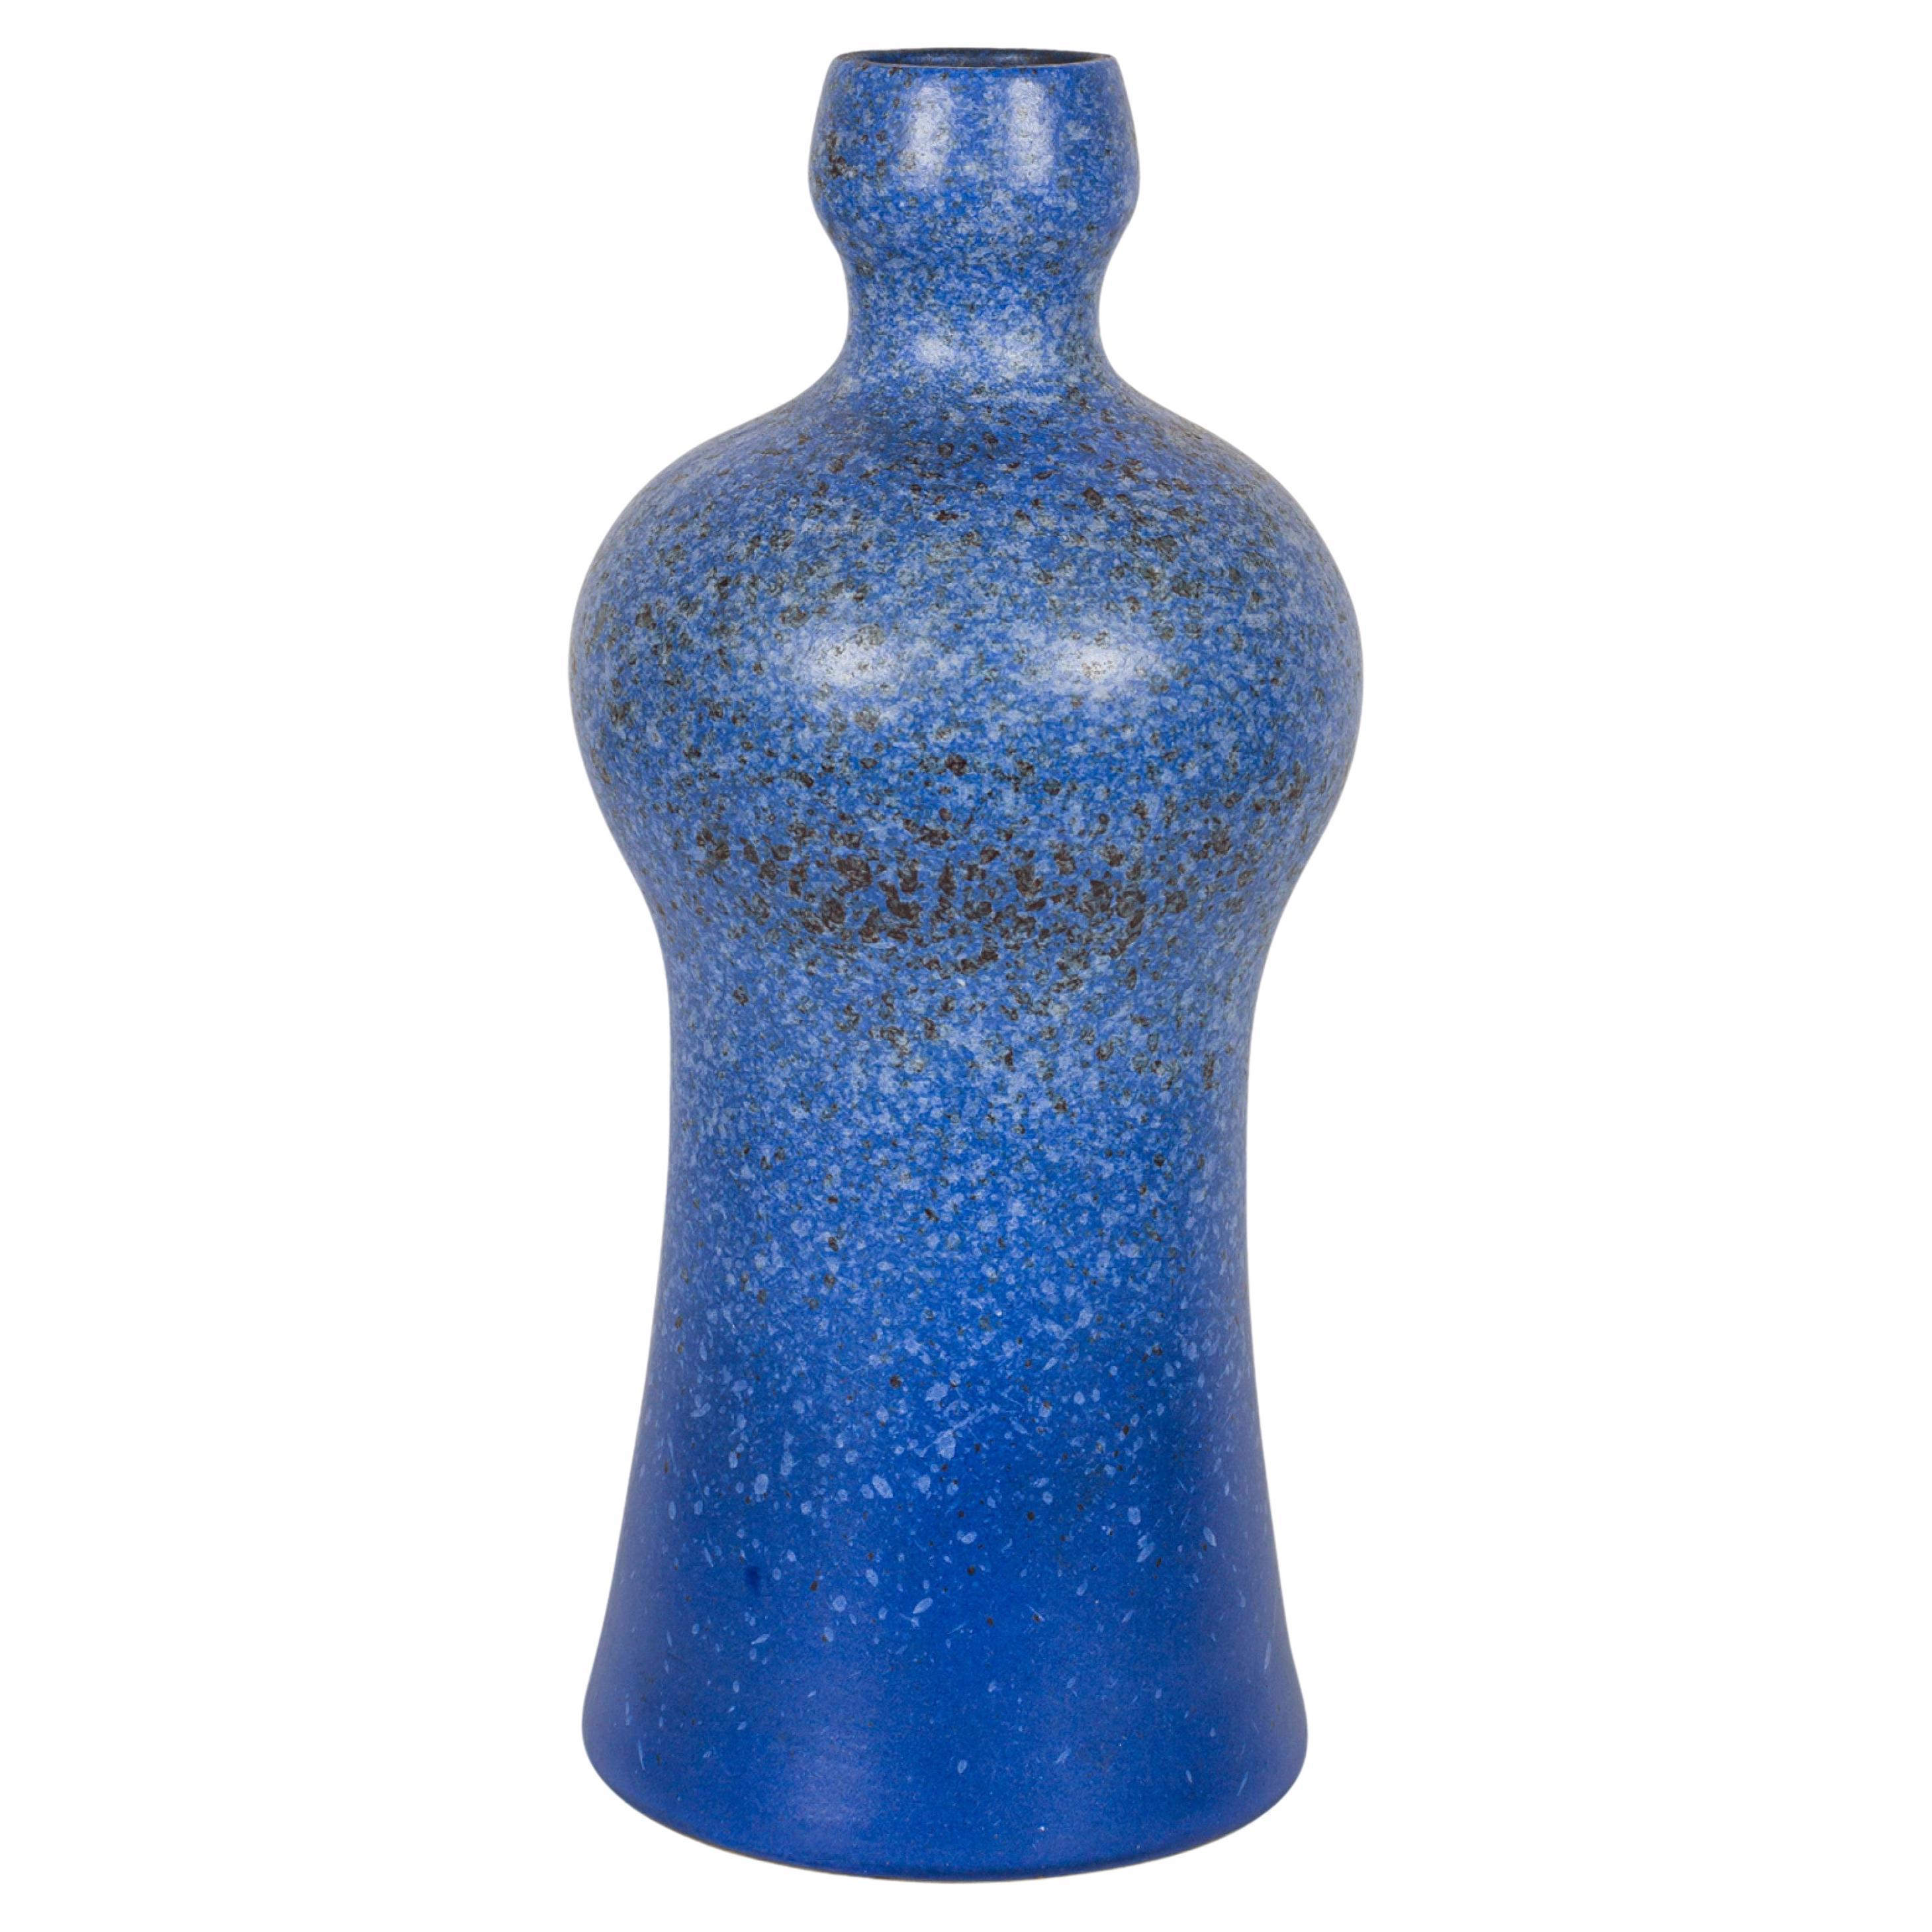 Vase bouteille en céramique émaillée bleue moucheté de Strehla Keramik, Allemagne de l'Est, milieu du siècle dernier